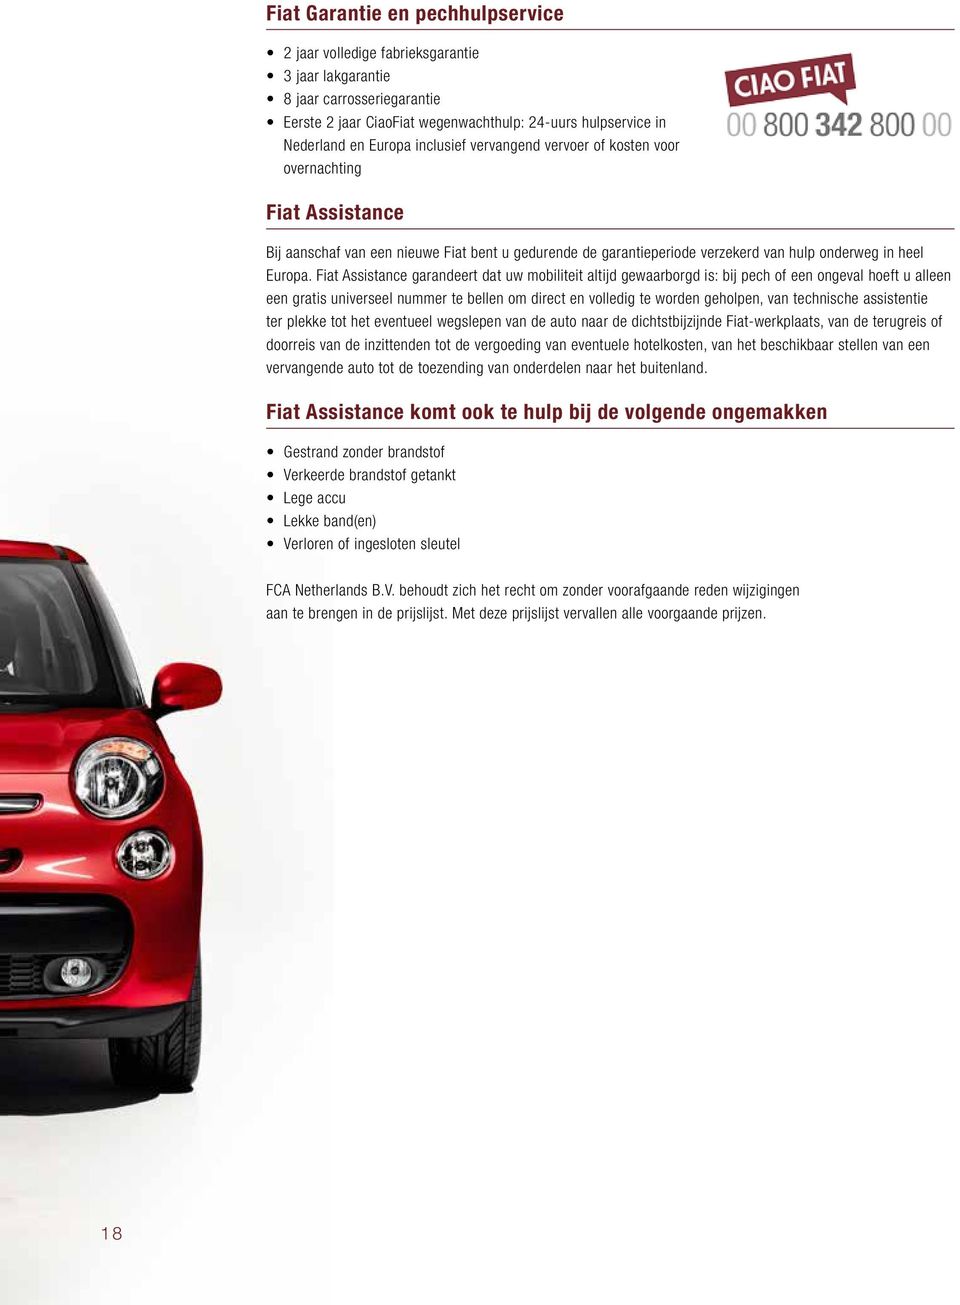 Fiat Assistance garandeert dat uw mobiliteit altijd gewaarborgd is: bij pech of een ongeval hoeft u alleen een gratis universeel nummer te bellen om direct en volledig te worden geholpen, van